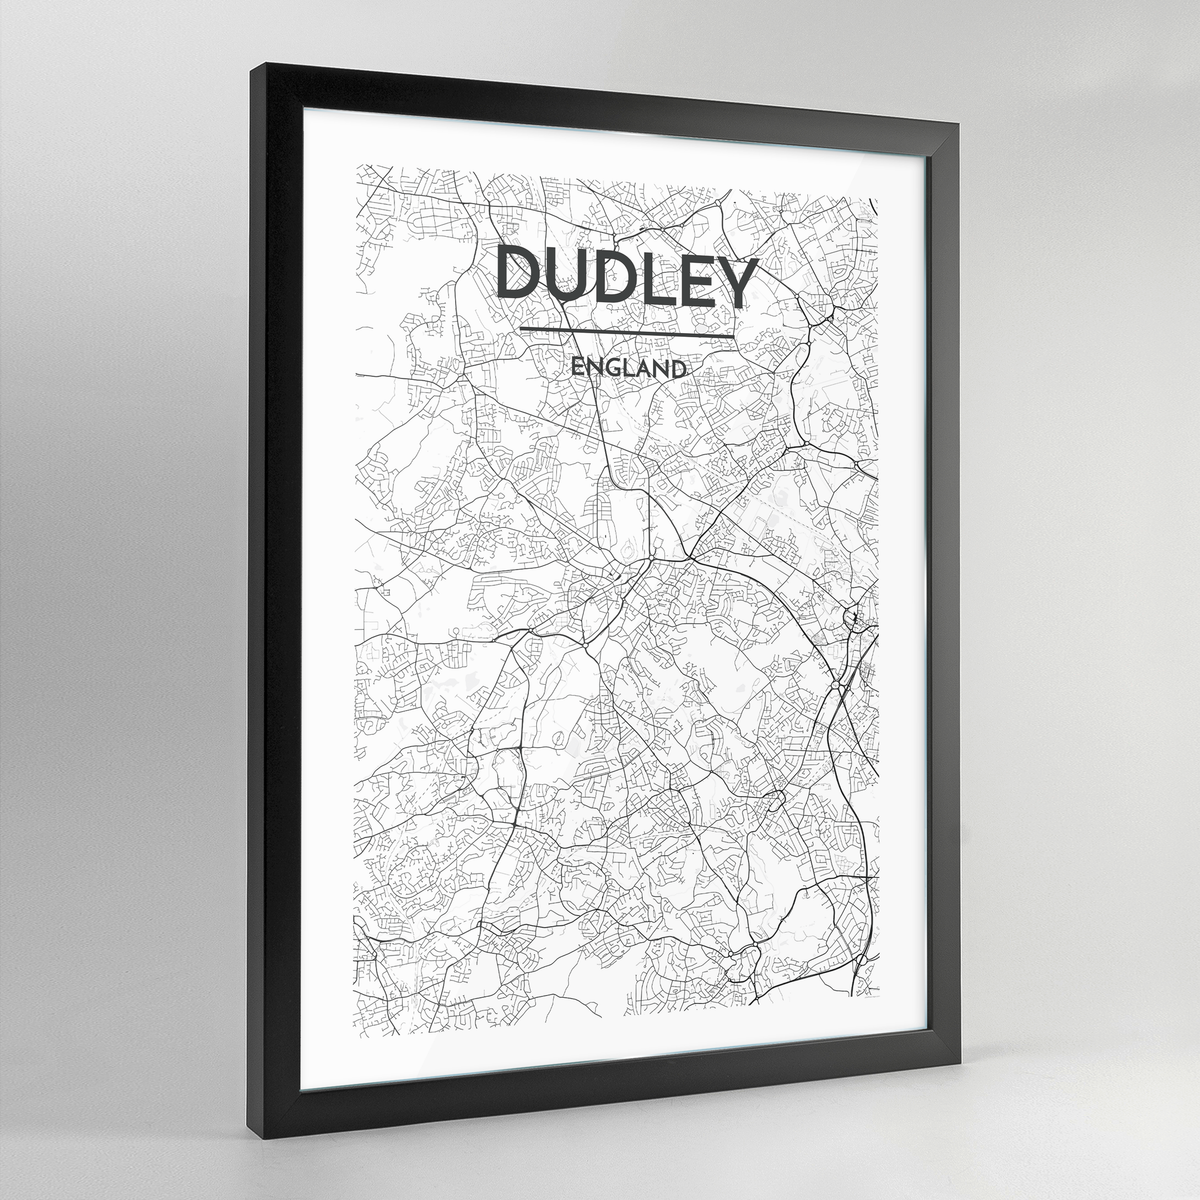 Dudley Map Art Print - Framed